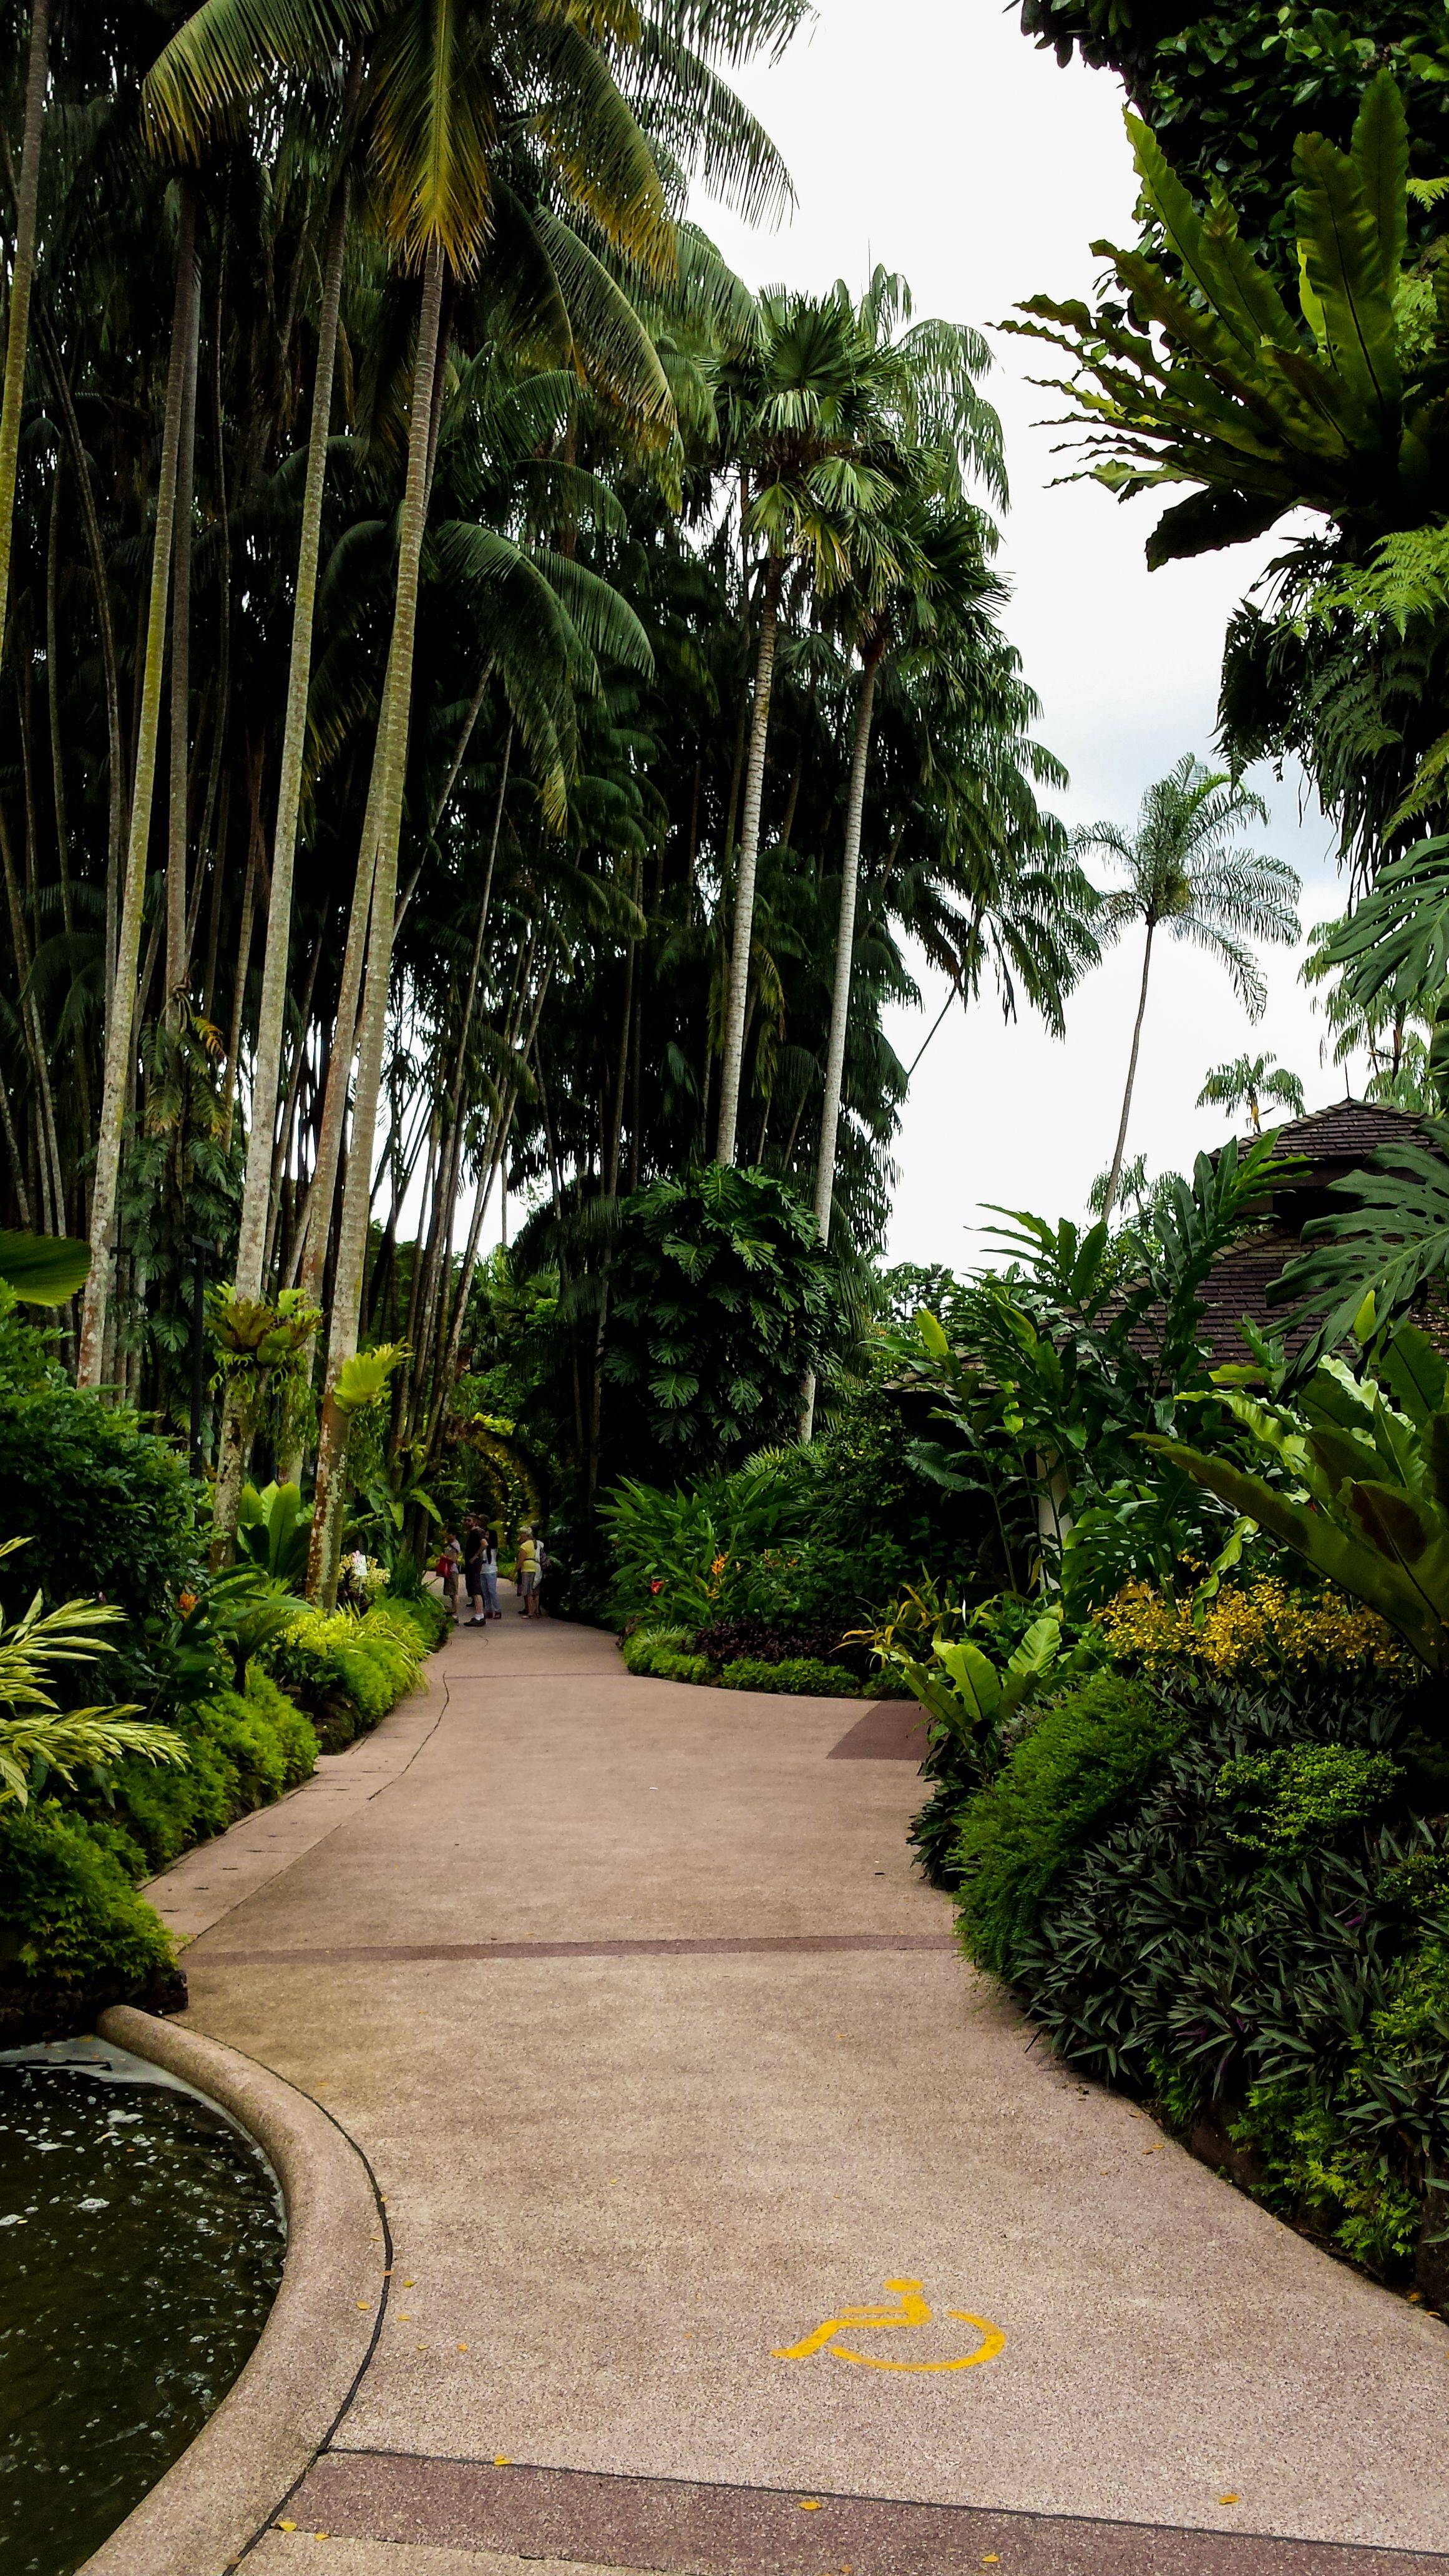 Singapore National Botanical Gardens